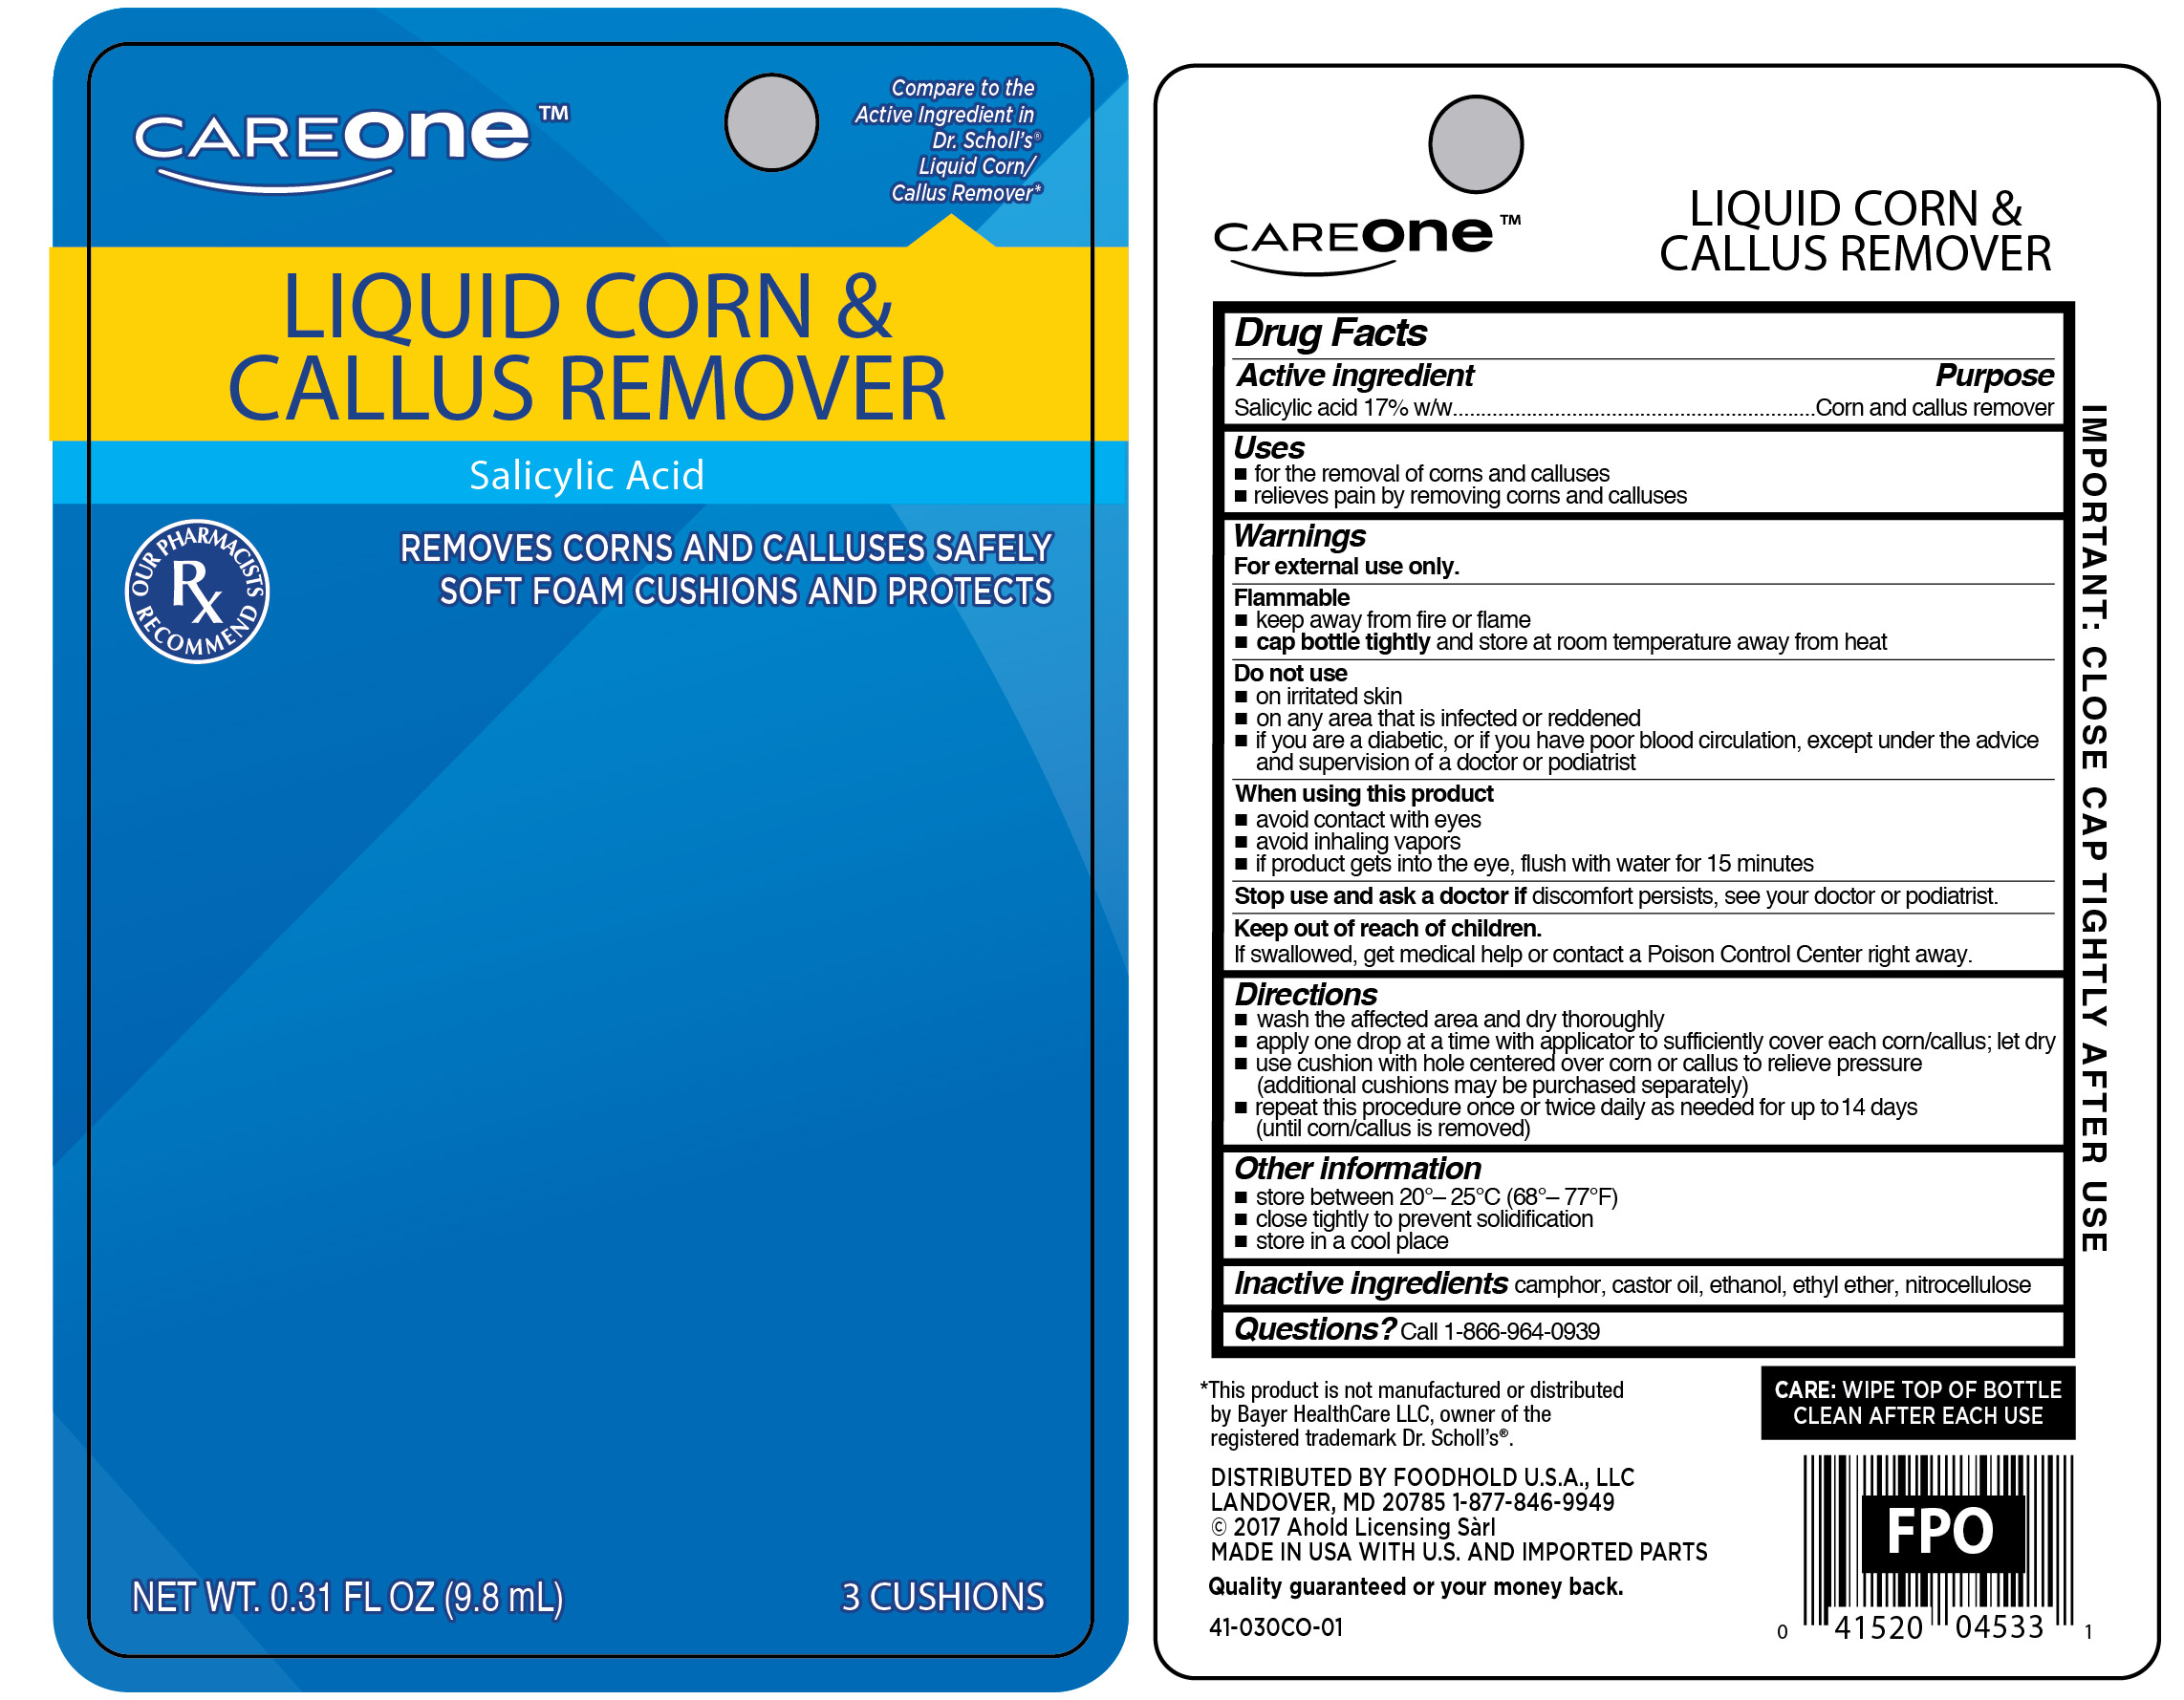 Liquid Corn and Callus Remover_CARD_41-030CO-01.jpg